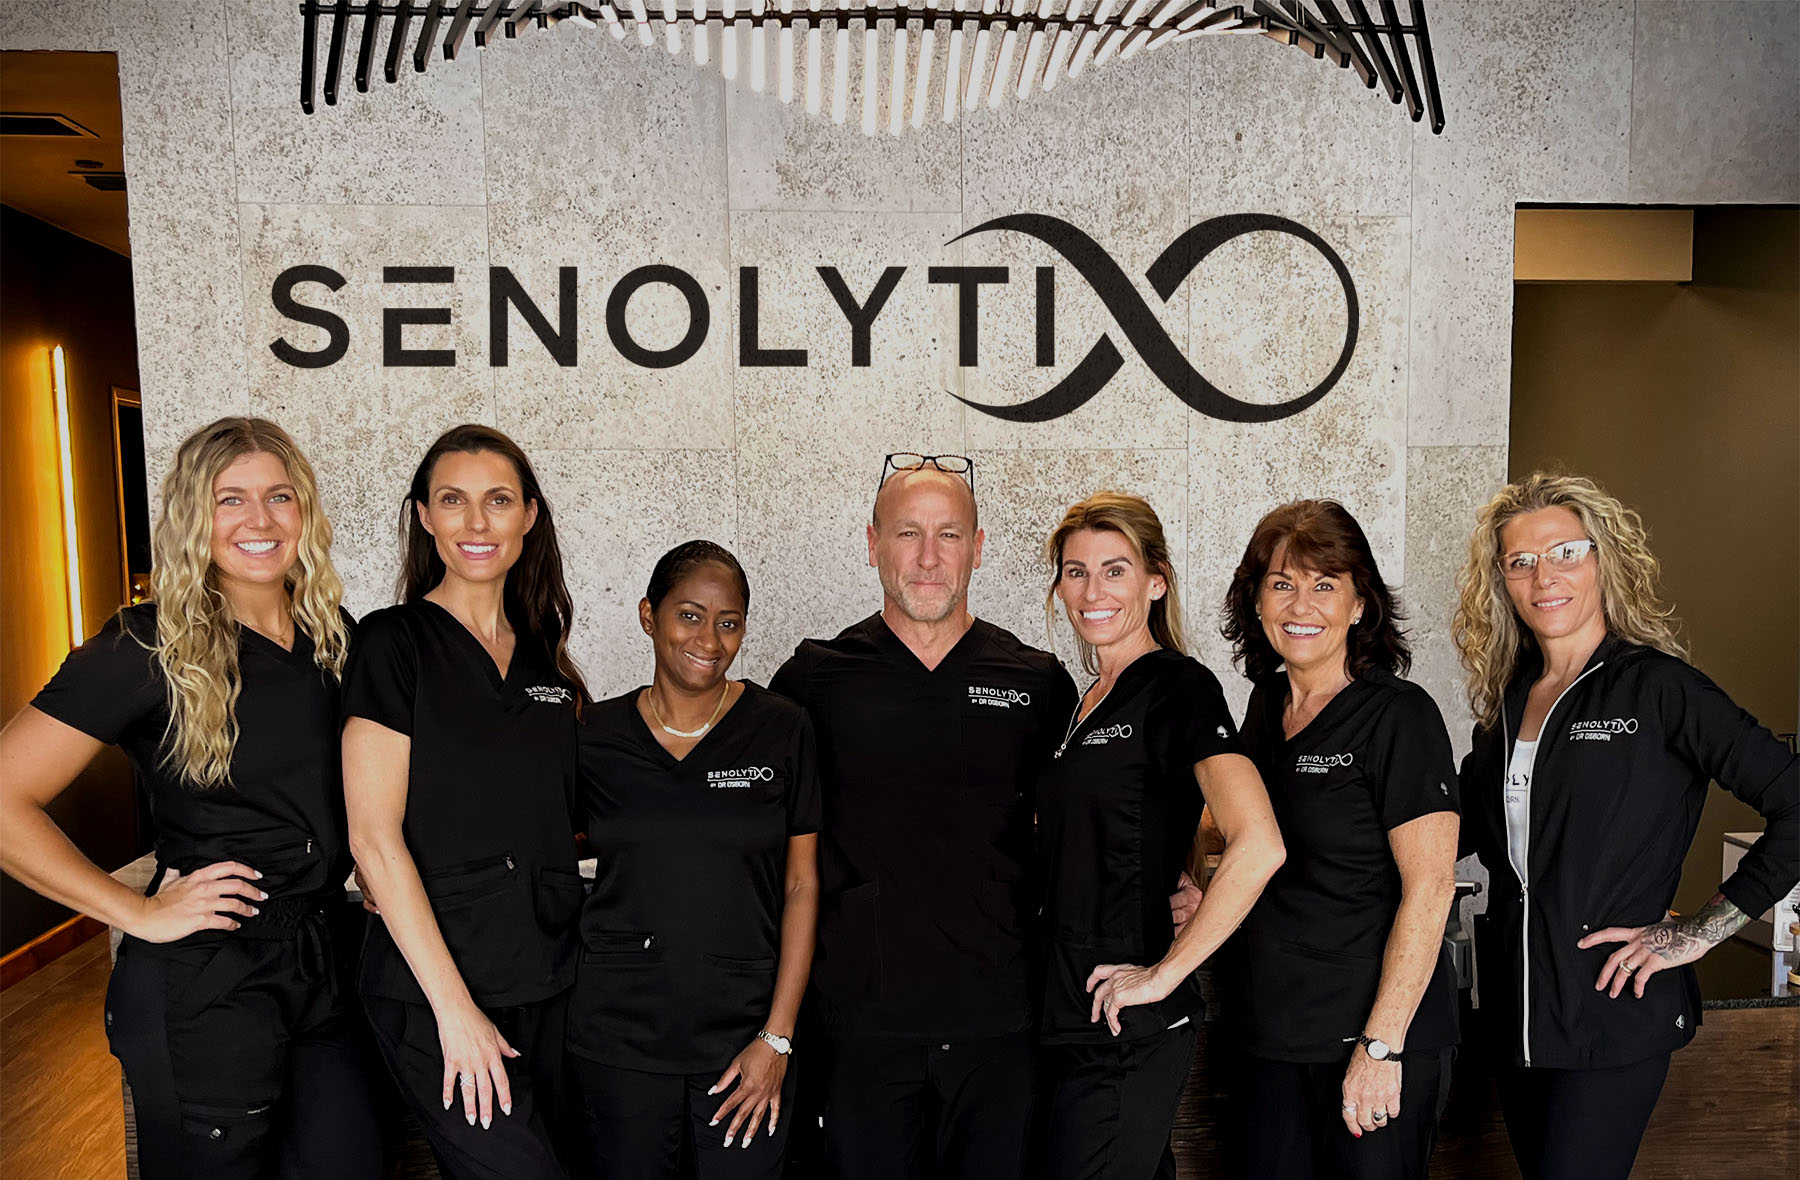 Staff Photo of our Senolytix team, with Dr. Brett Osborn